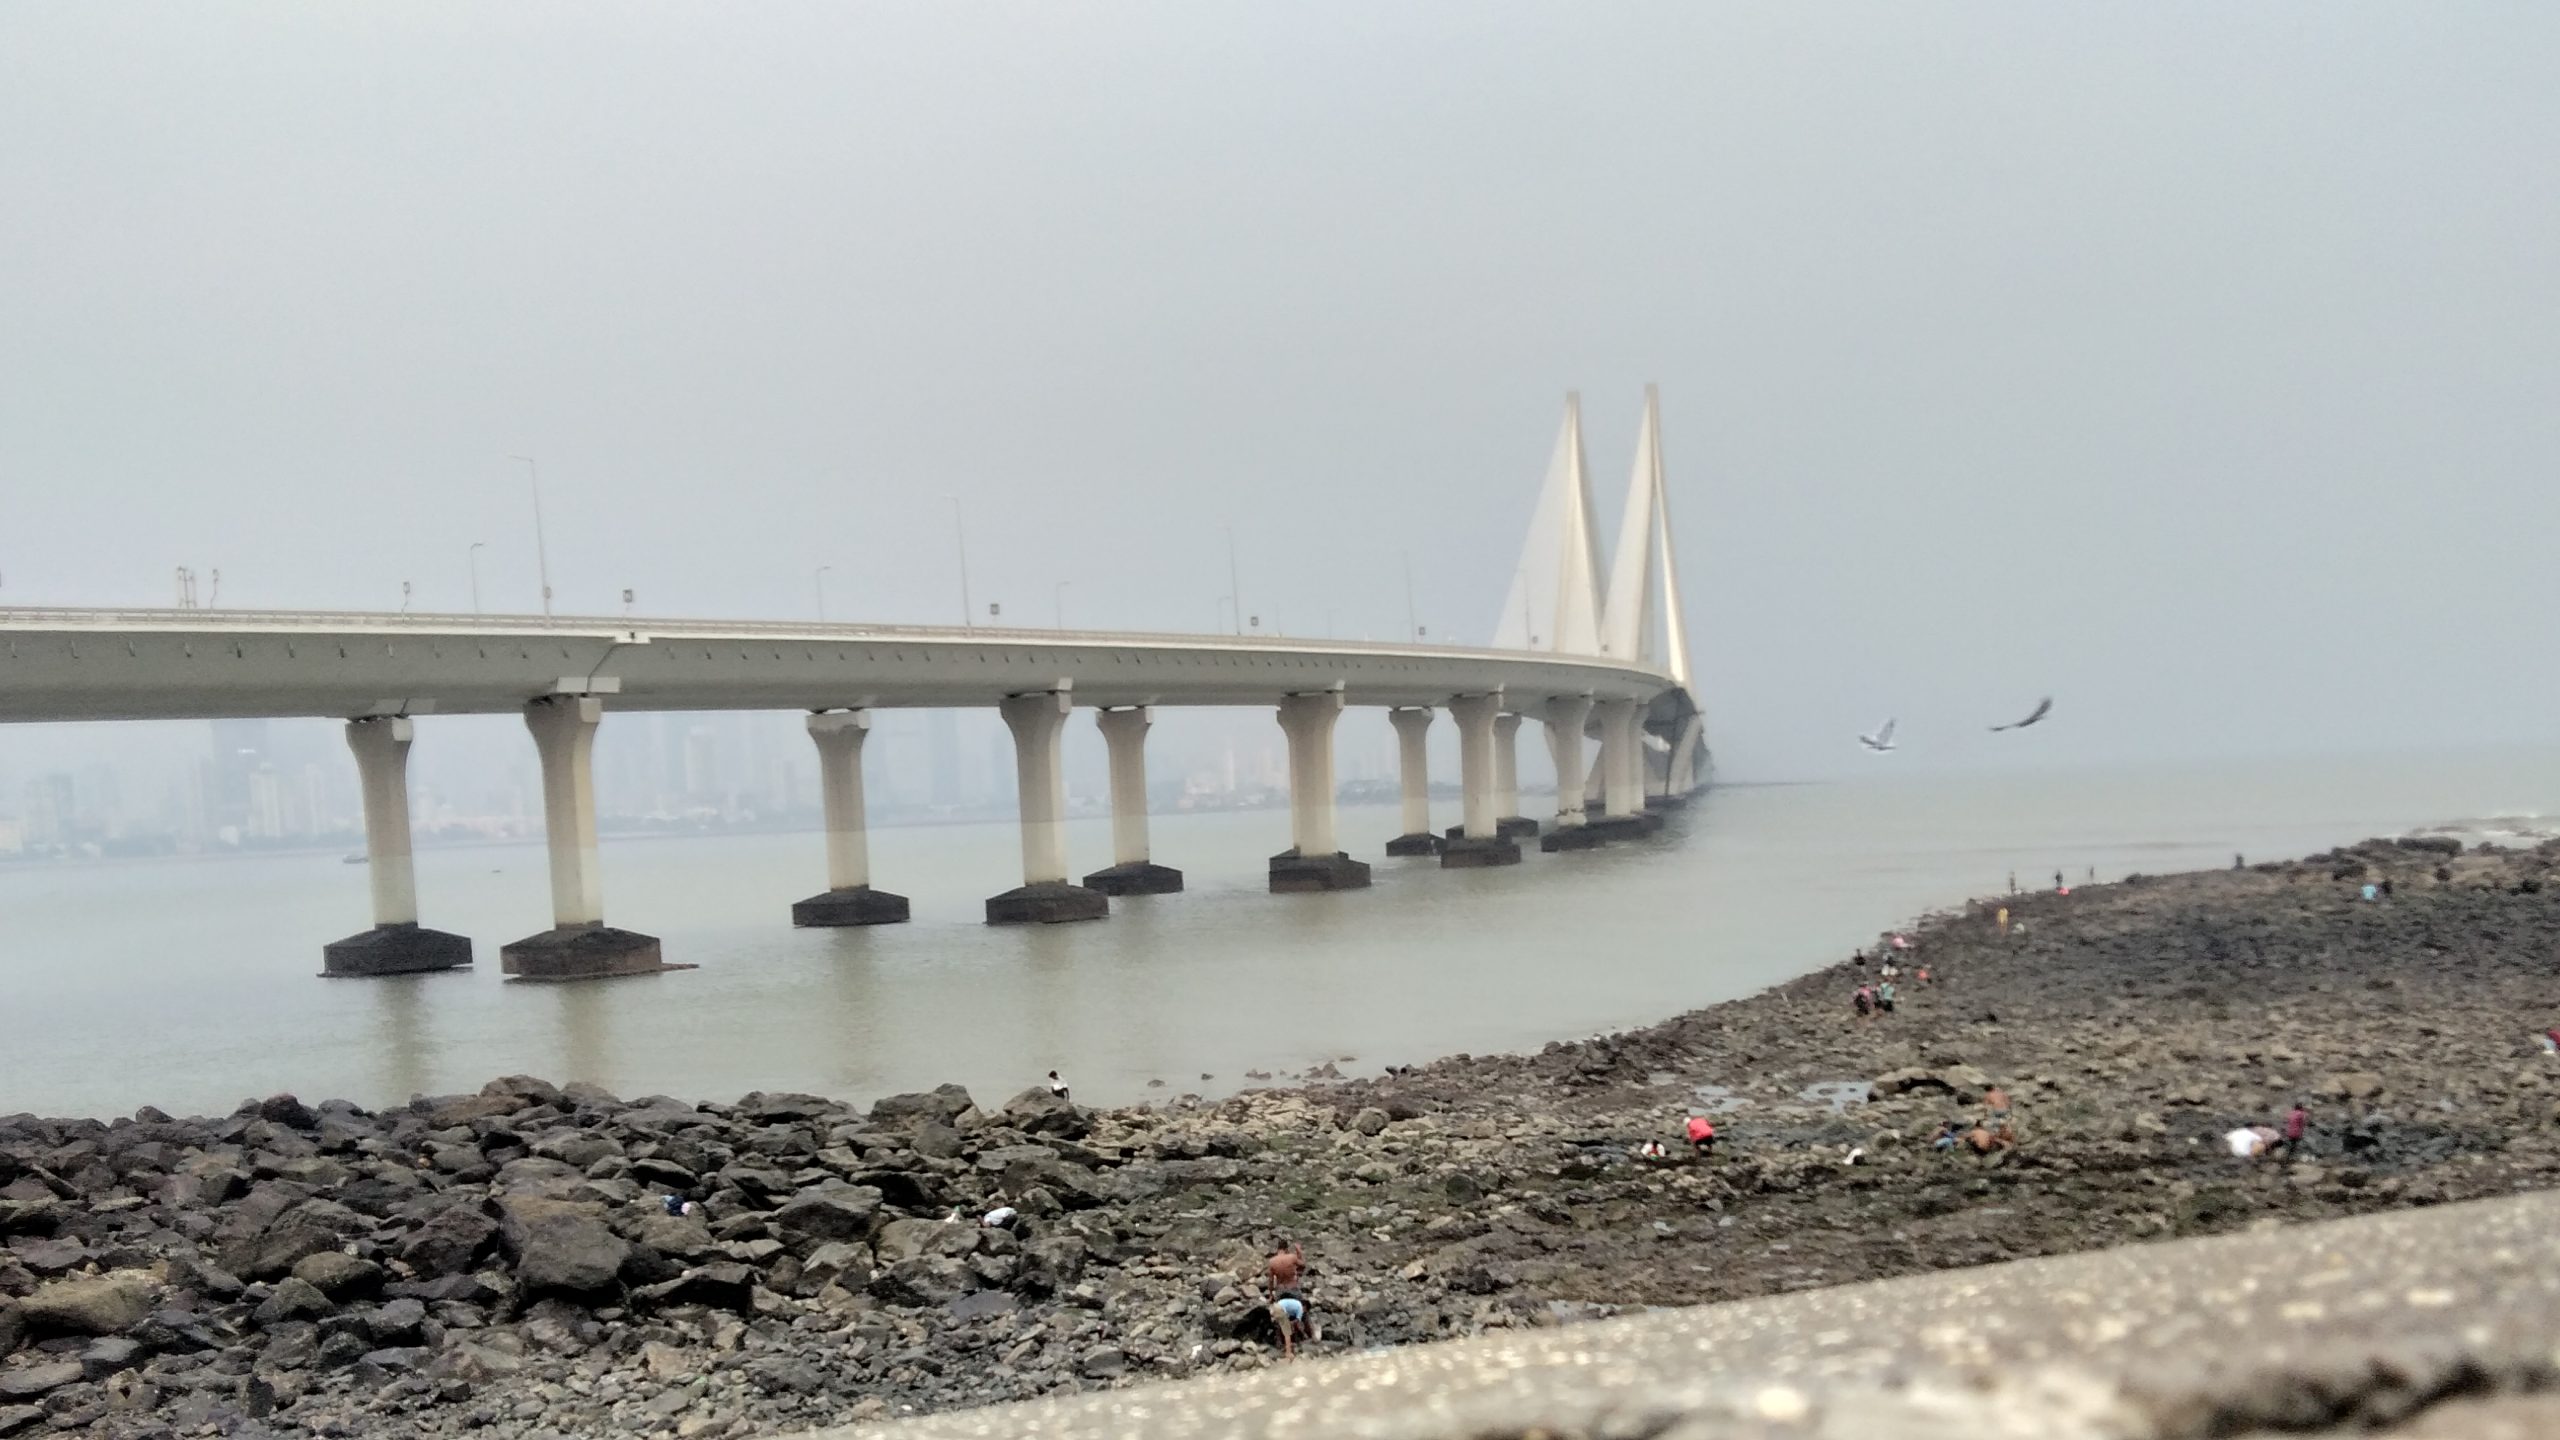 Bandra Worli sealink bridge